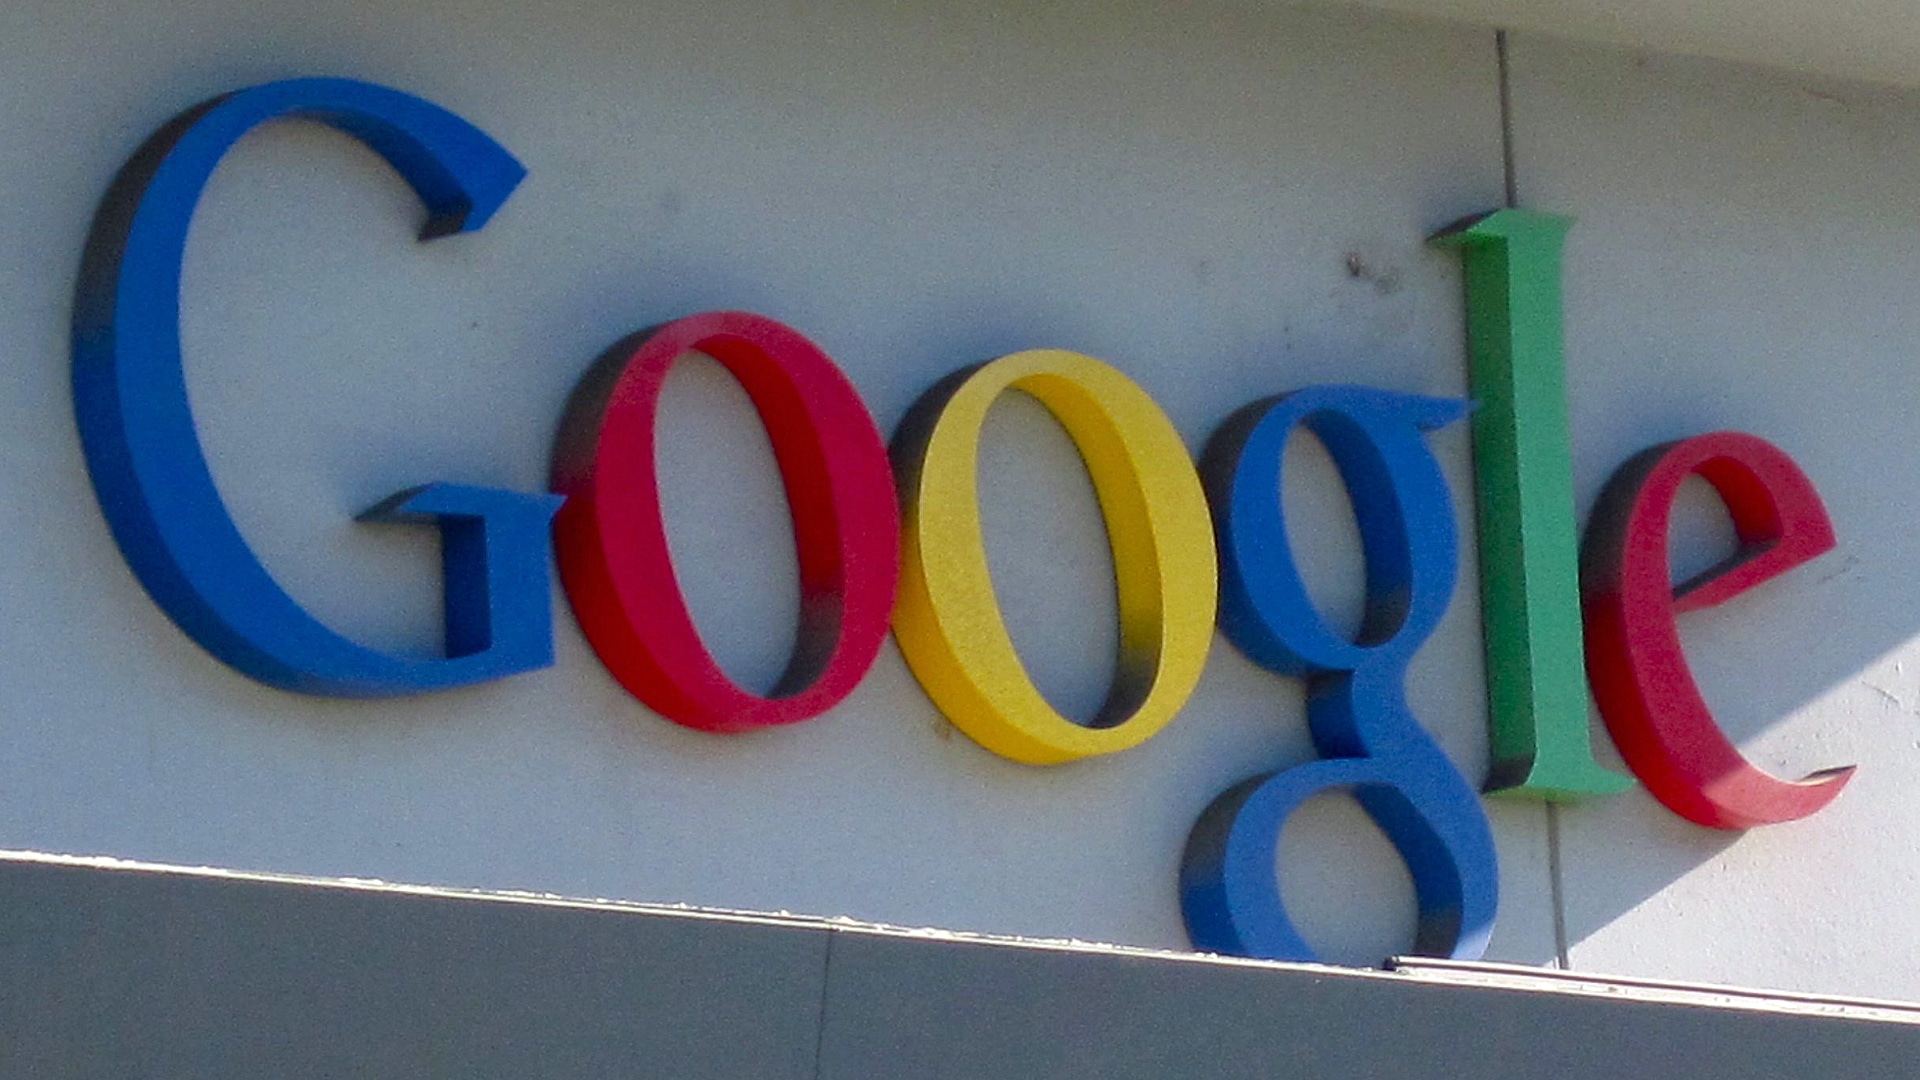 Der Konzern Google darf zunächst nicht weiter mit dem Bundesgesundheitsministerium kooperieren